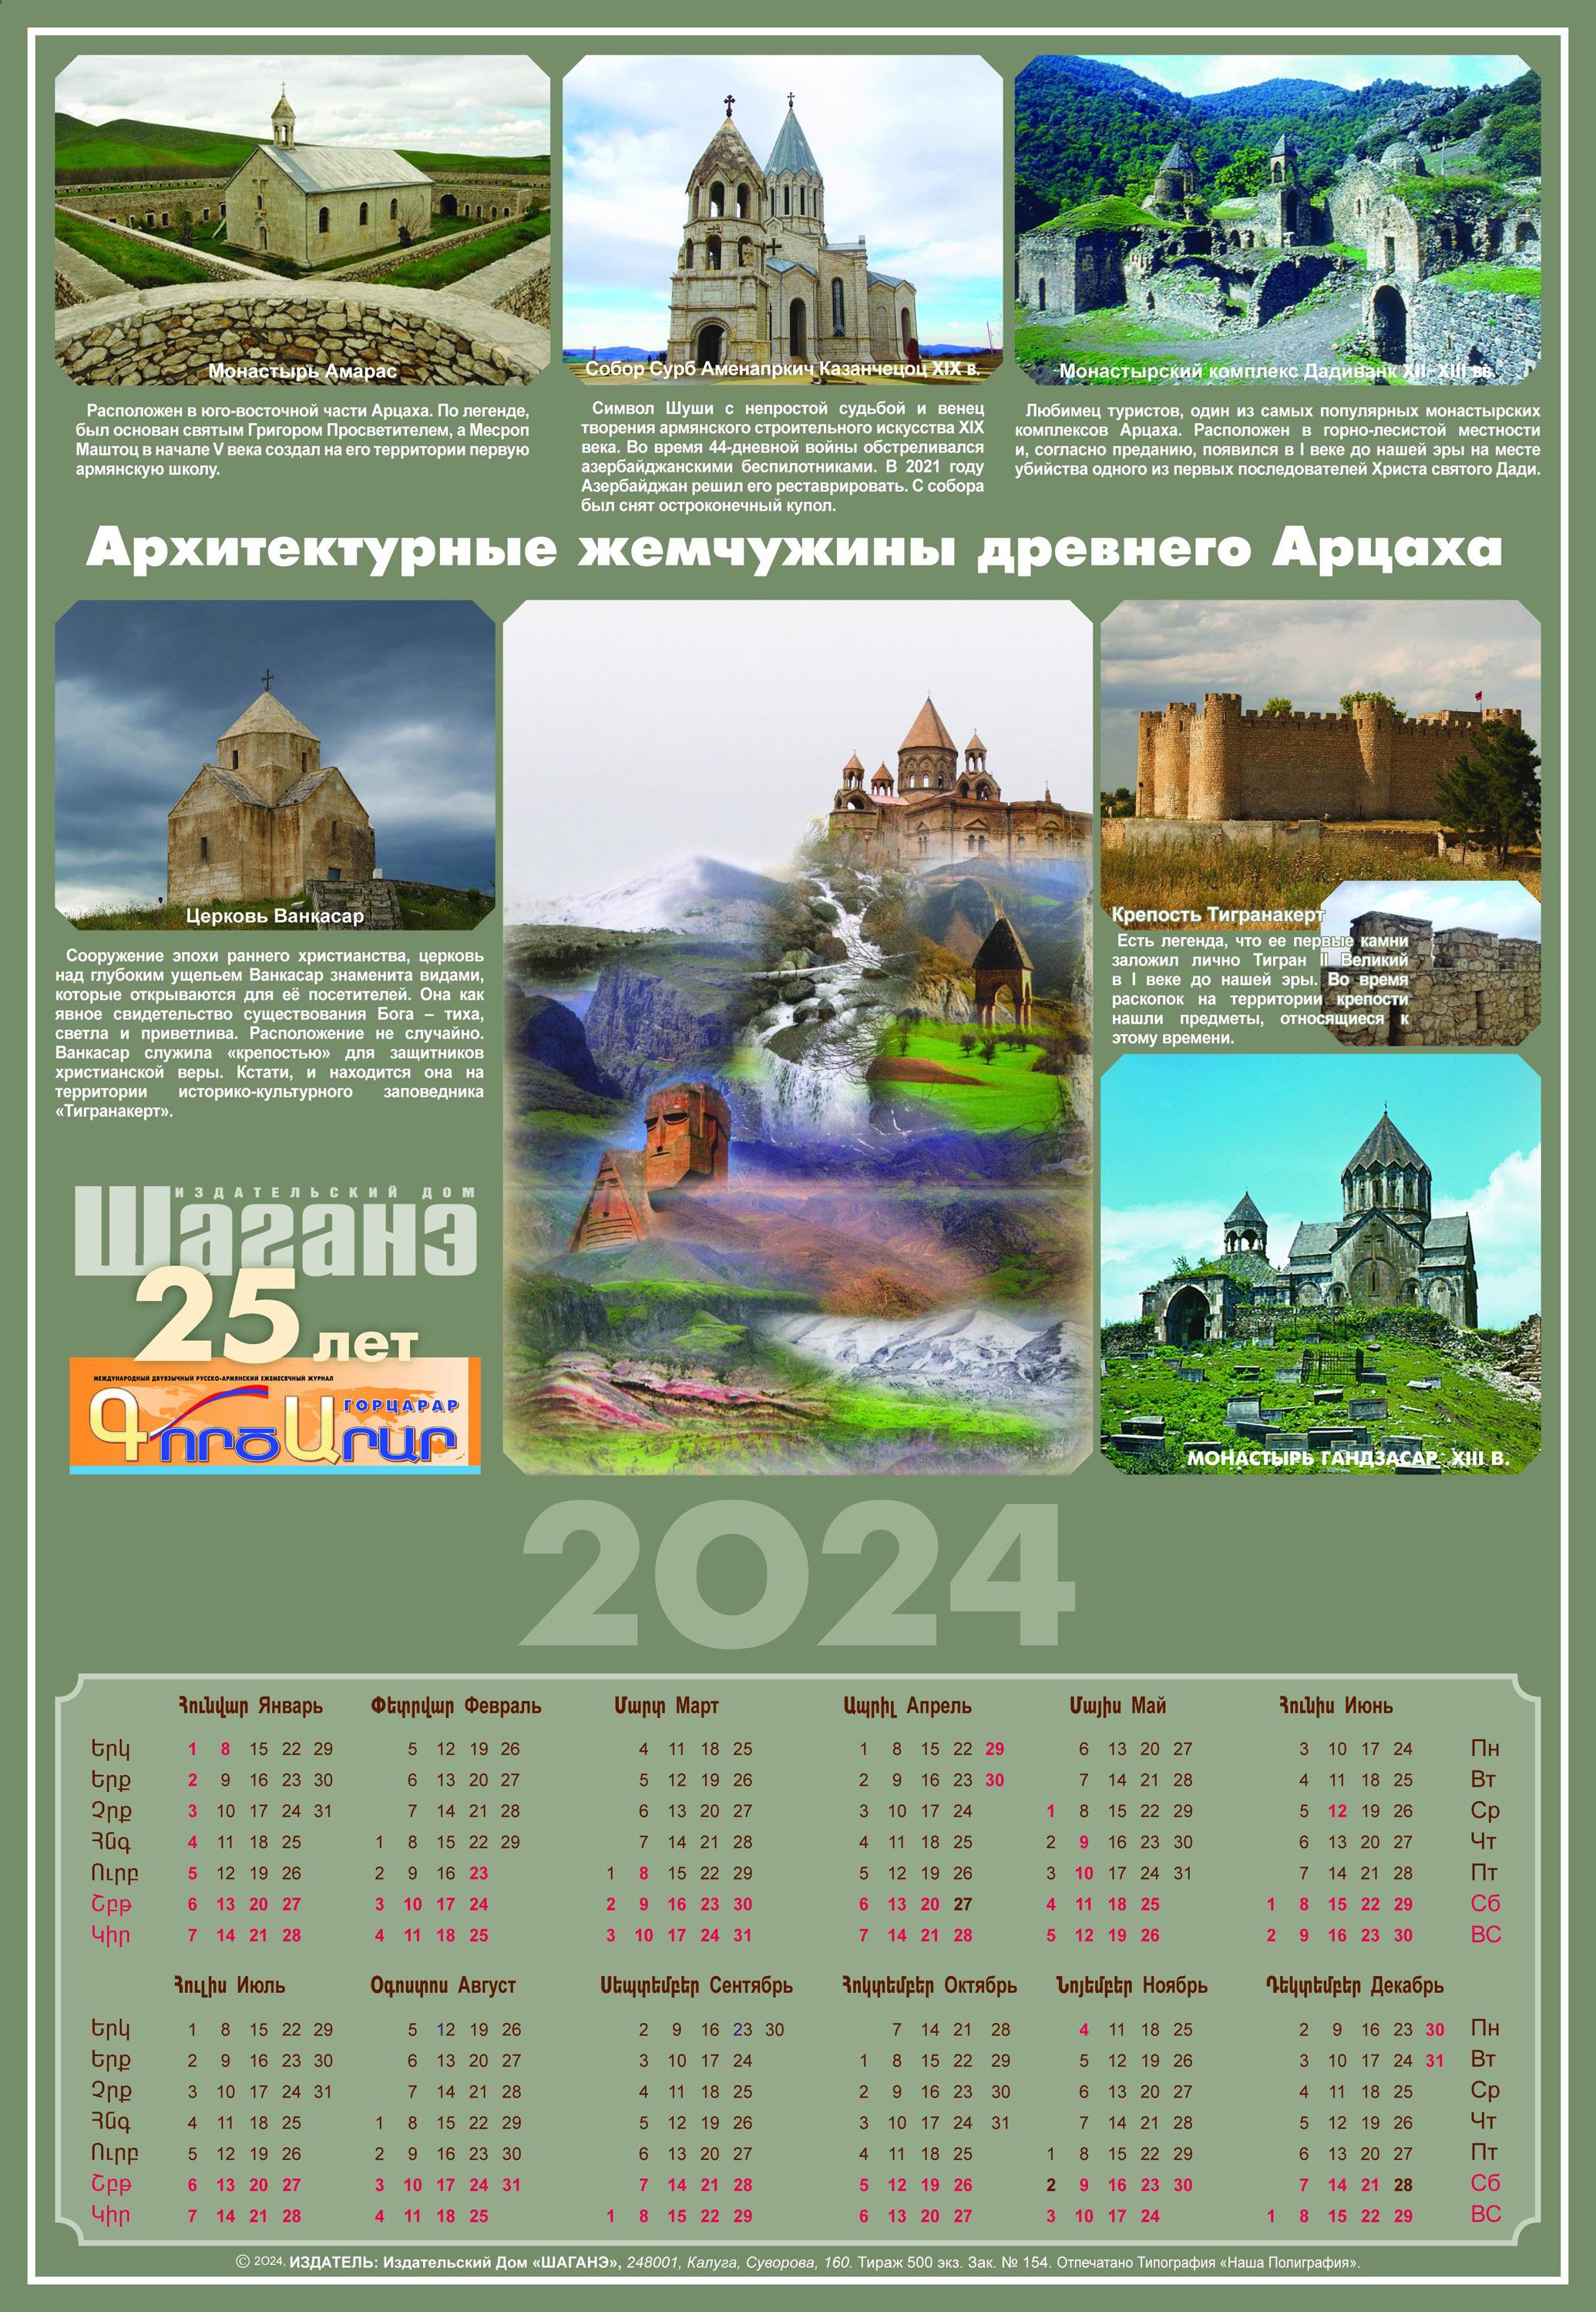 «Армянский календарь 2024»